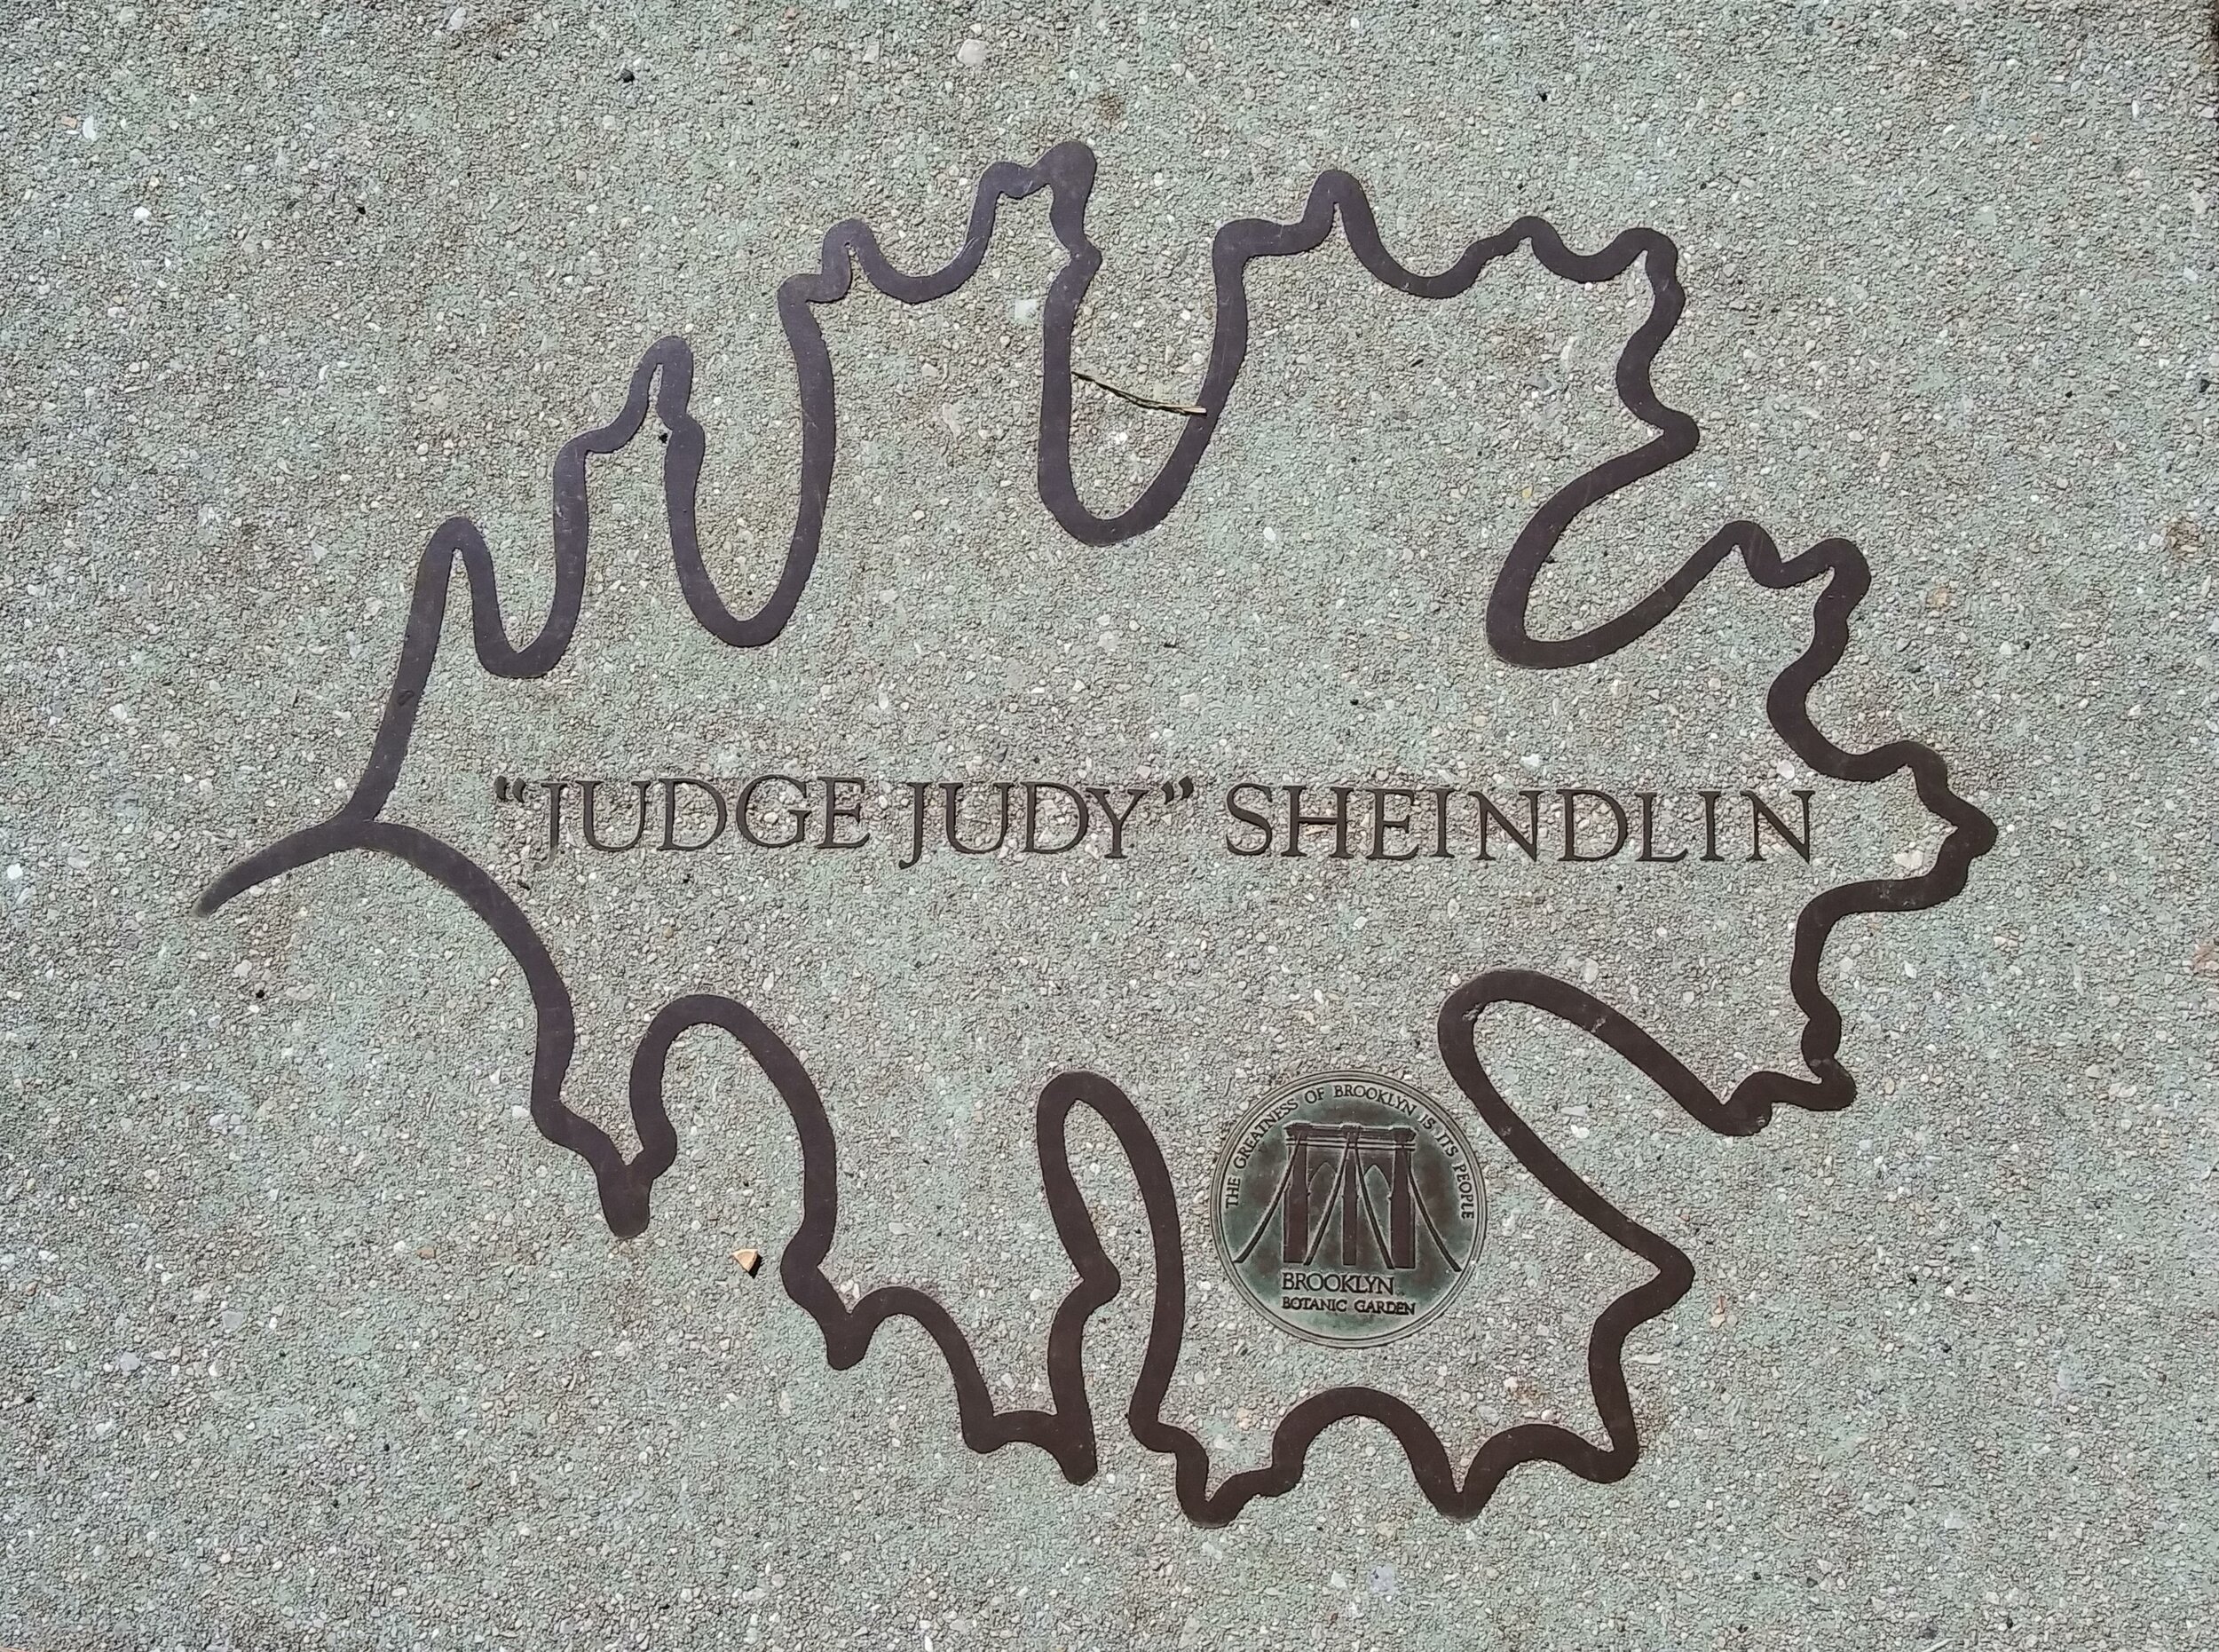 Judge Judy 1.jpg